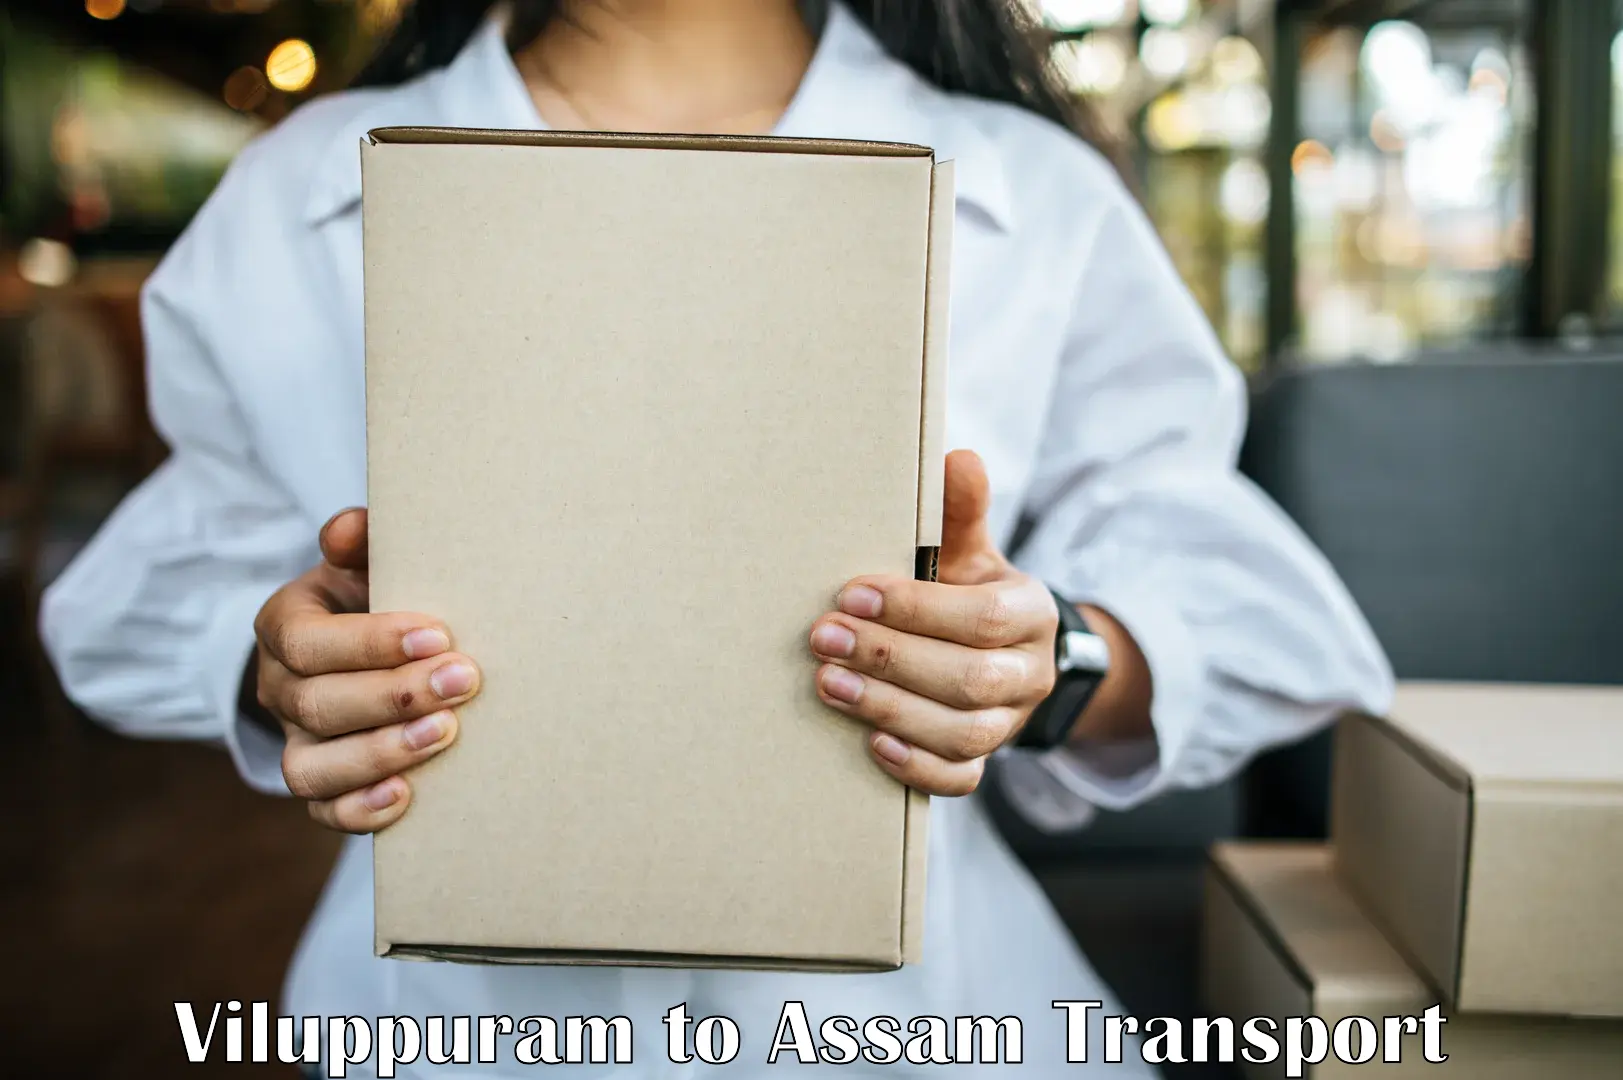 International cargo transportation services Viluppuram to Assam